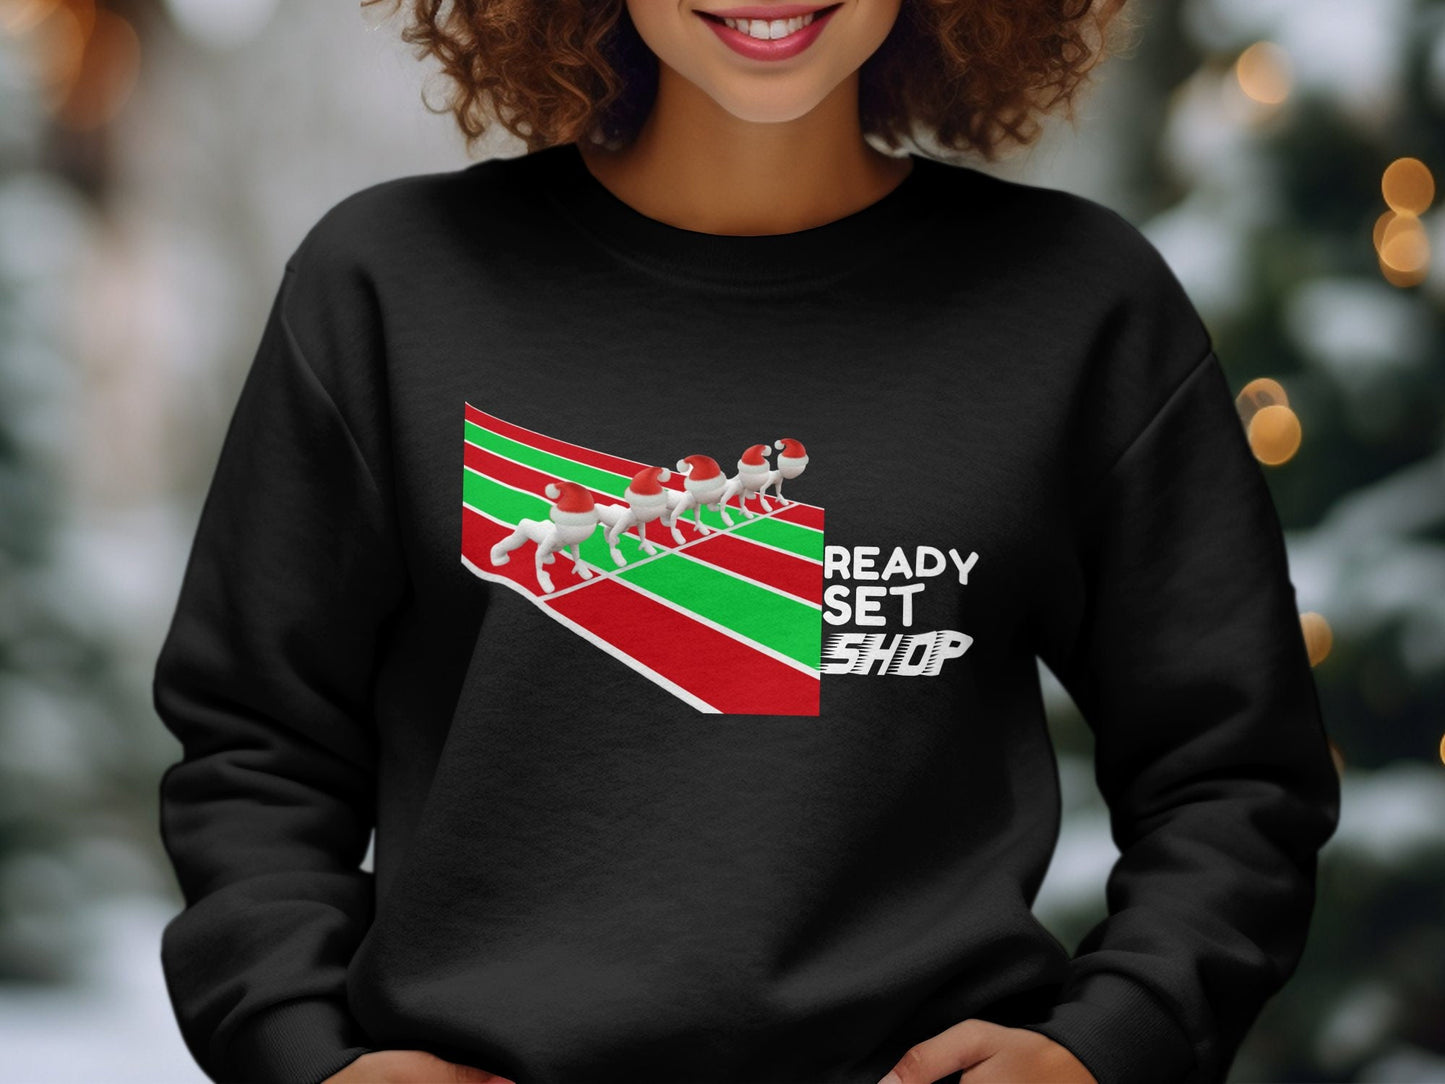 Ready, Set, Shop Shirt - Funny Shopping Tee, Shop Shirt, On Your Mark Shirt, Shopping Shirt, Funny Shopping Shirt